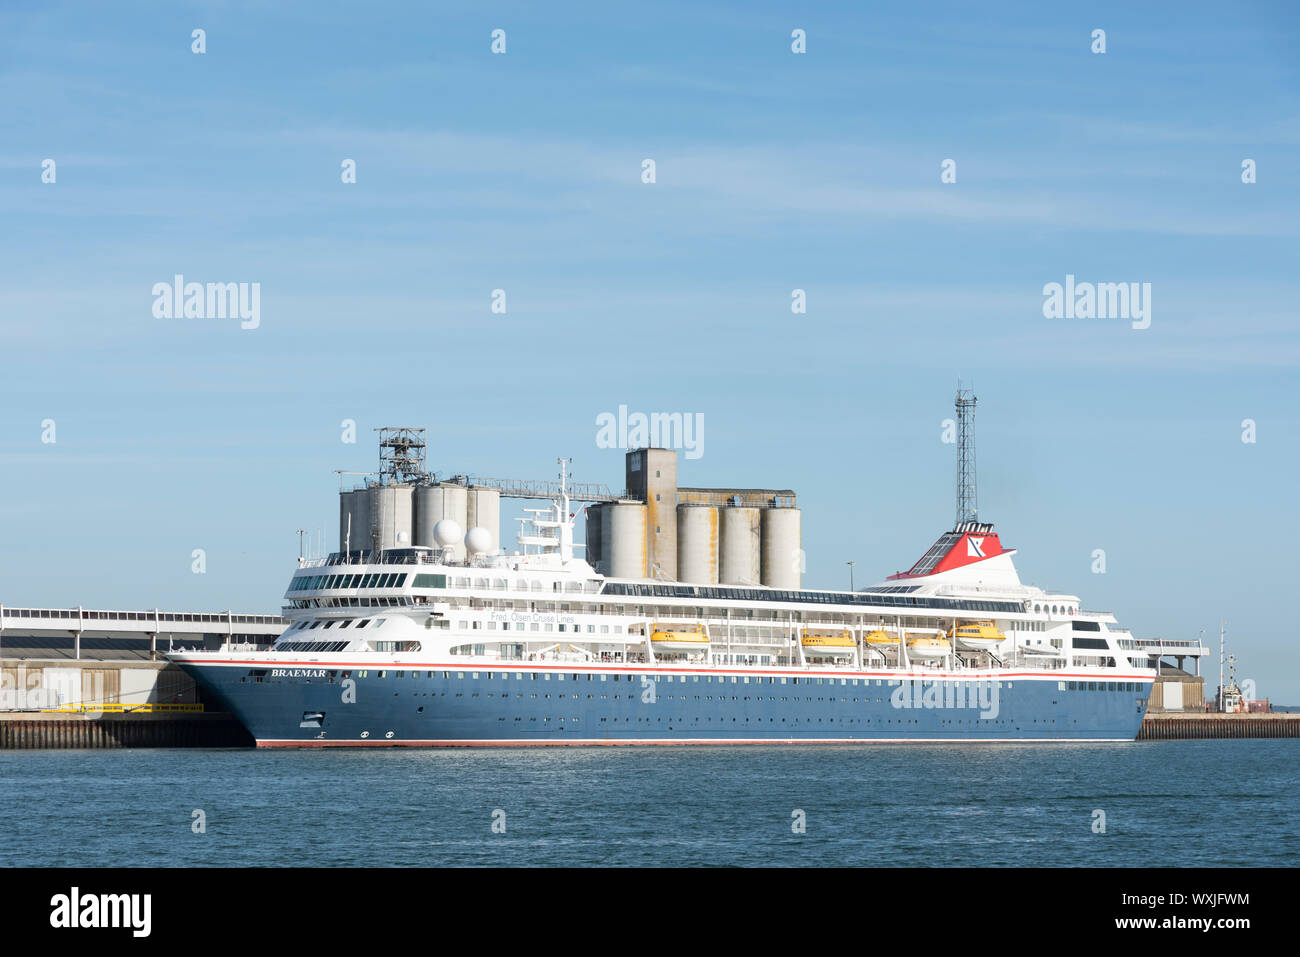 Braemar cruise -Fotos und -Bildmaterial in hoher Auflösung – Alamy